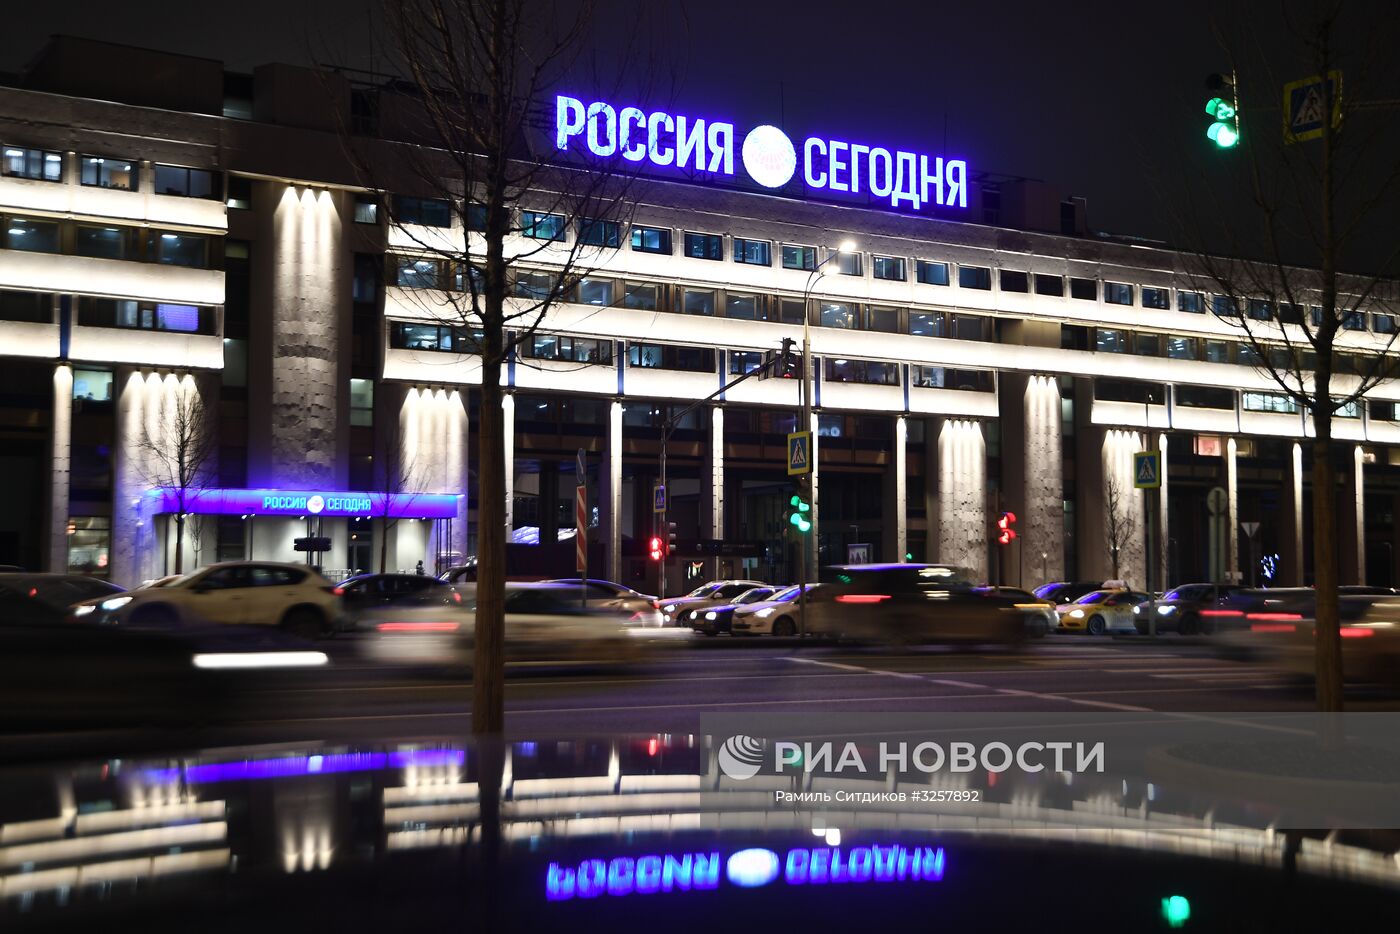 Здание МИА "Россия сегодня"